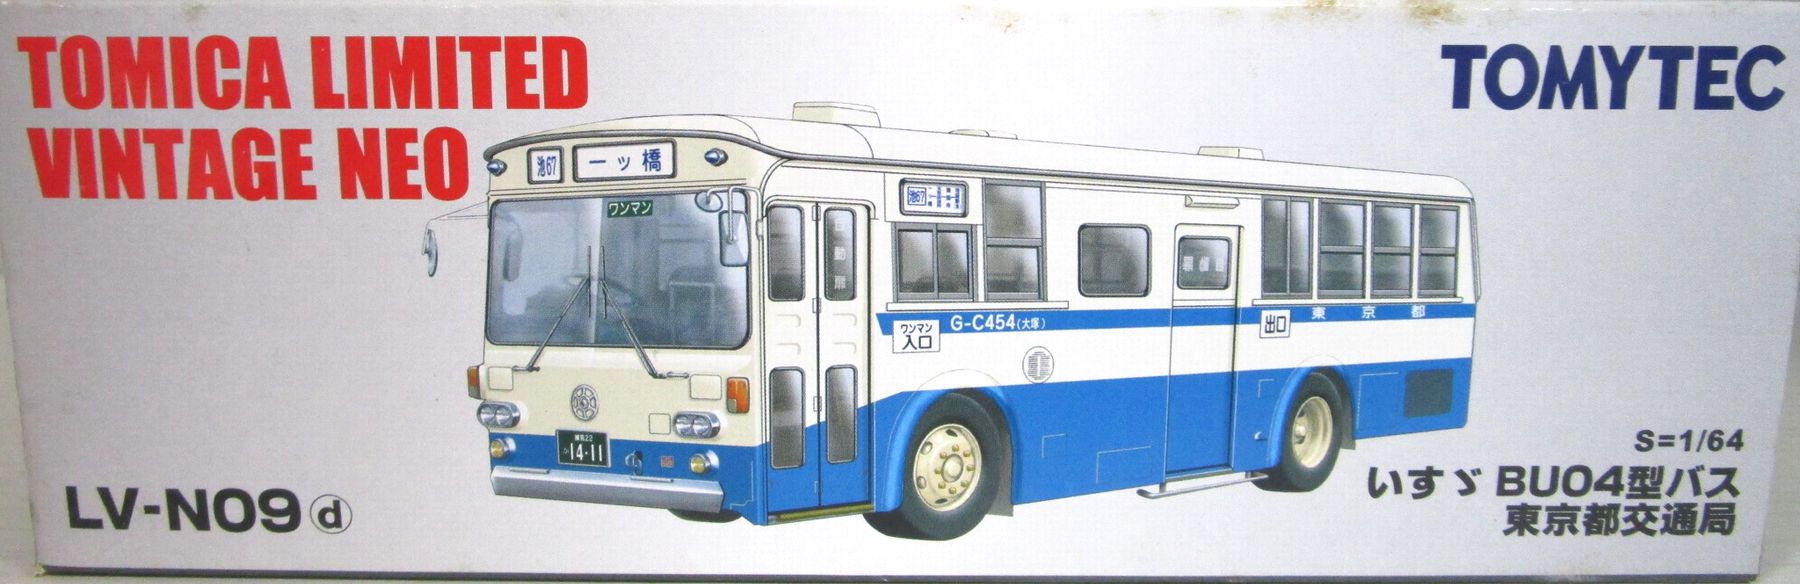 公式]TOY(トミカリミテッドヴィンテージNEO LV-N09d いすゞBU04型バス 